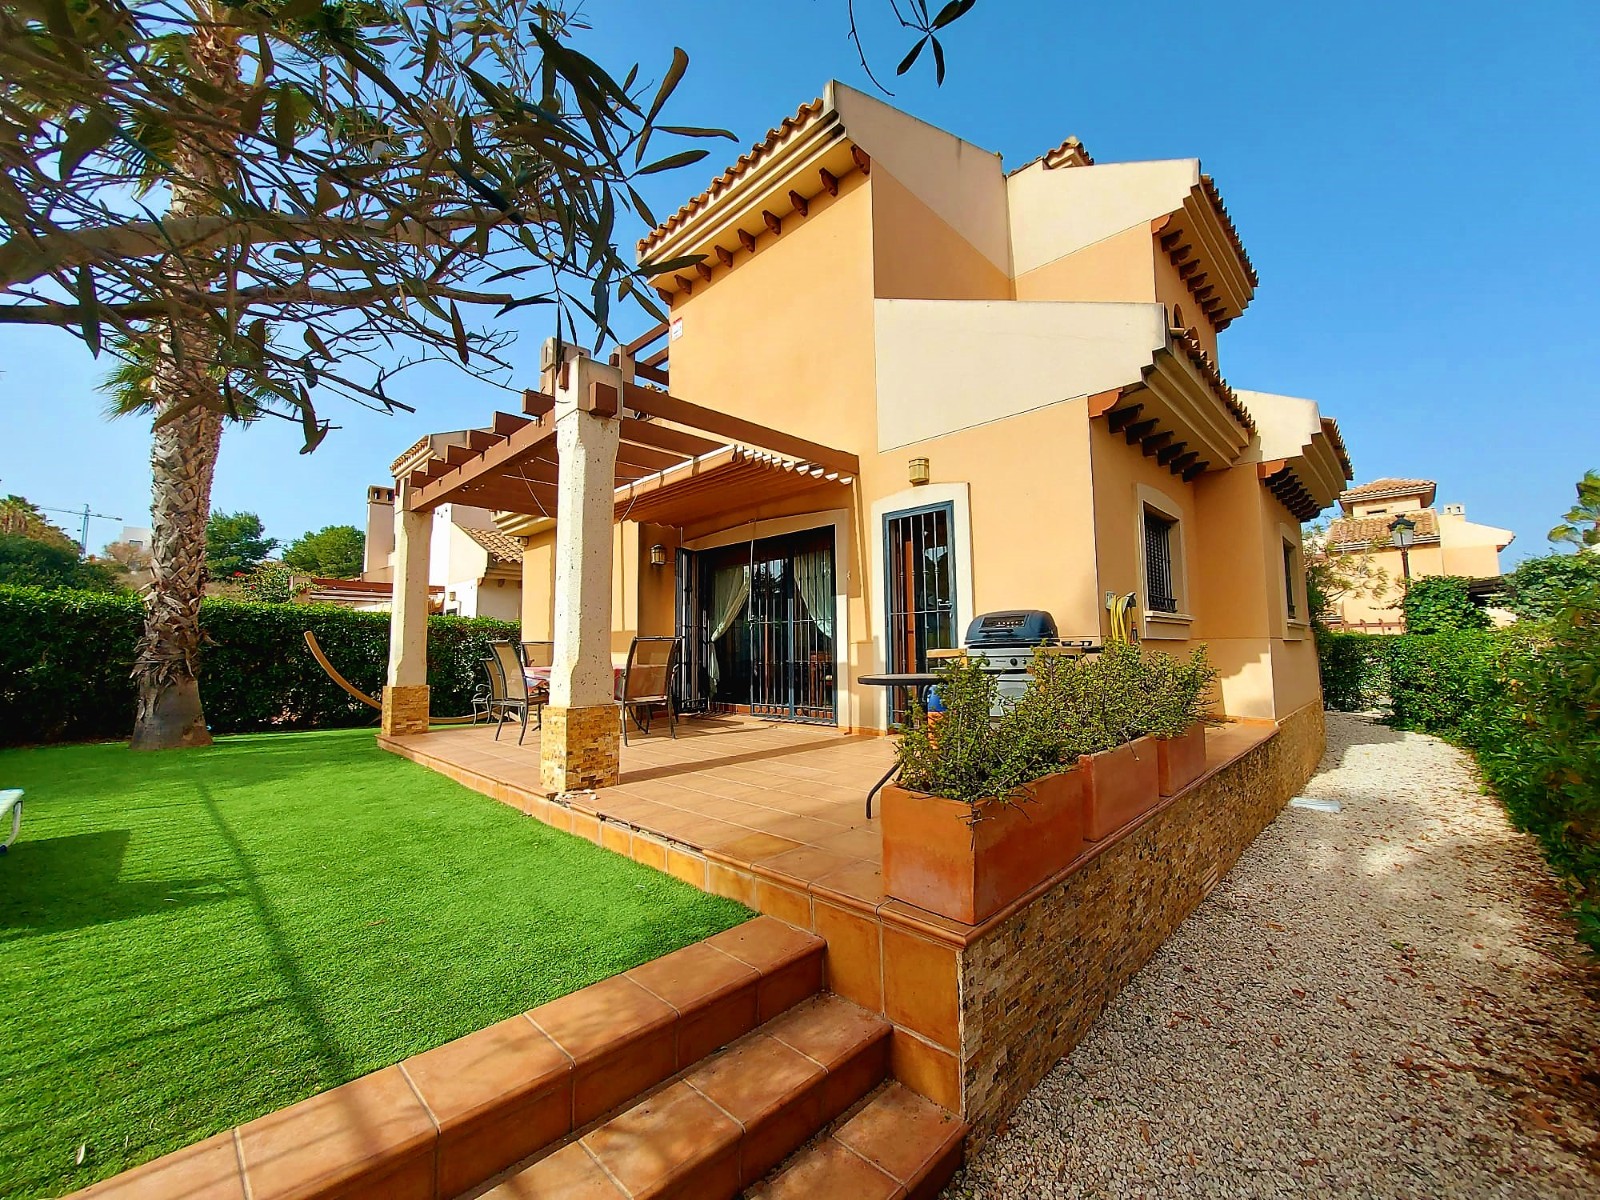 3 bedroom house / villa for sale in Algorfa, Costa Blanca